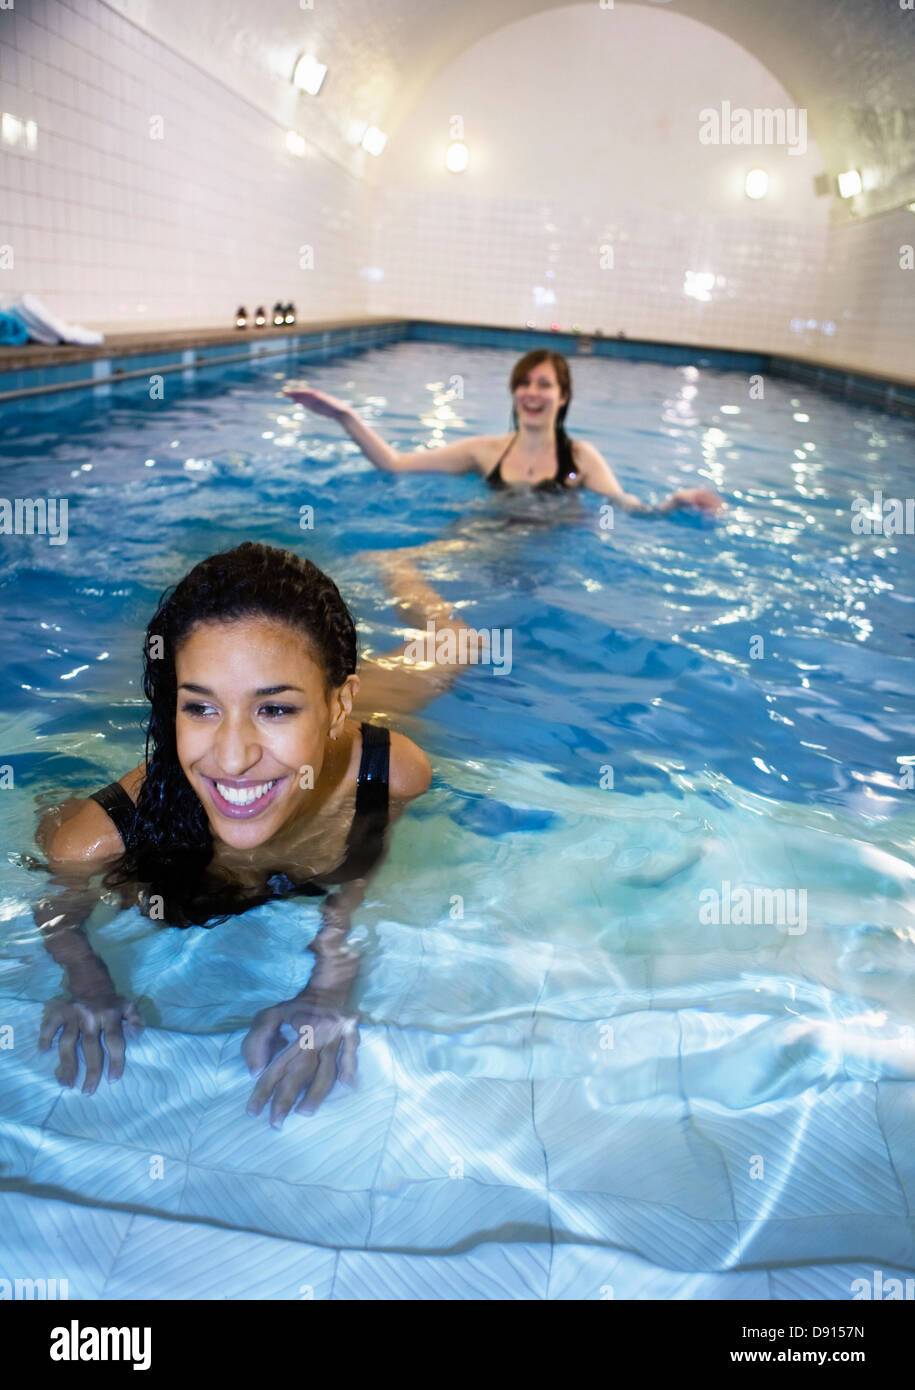 Zwei junge Frauen in öffentlichen Schwimmbädern, Stockholm, Schweden. Stockfoto